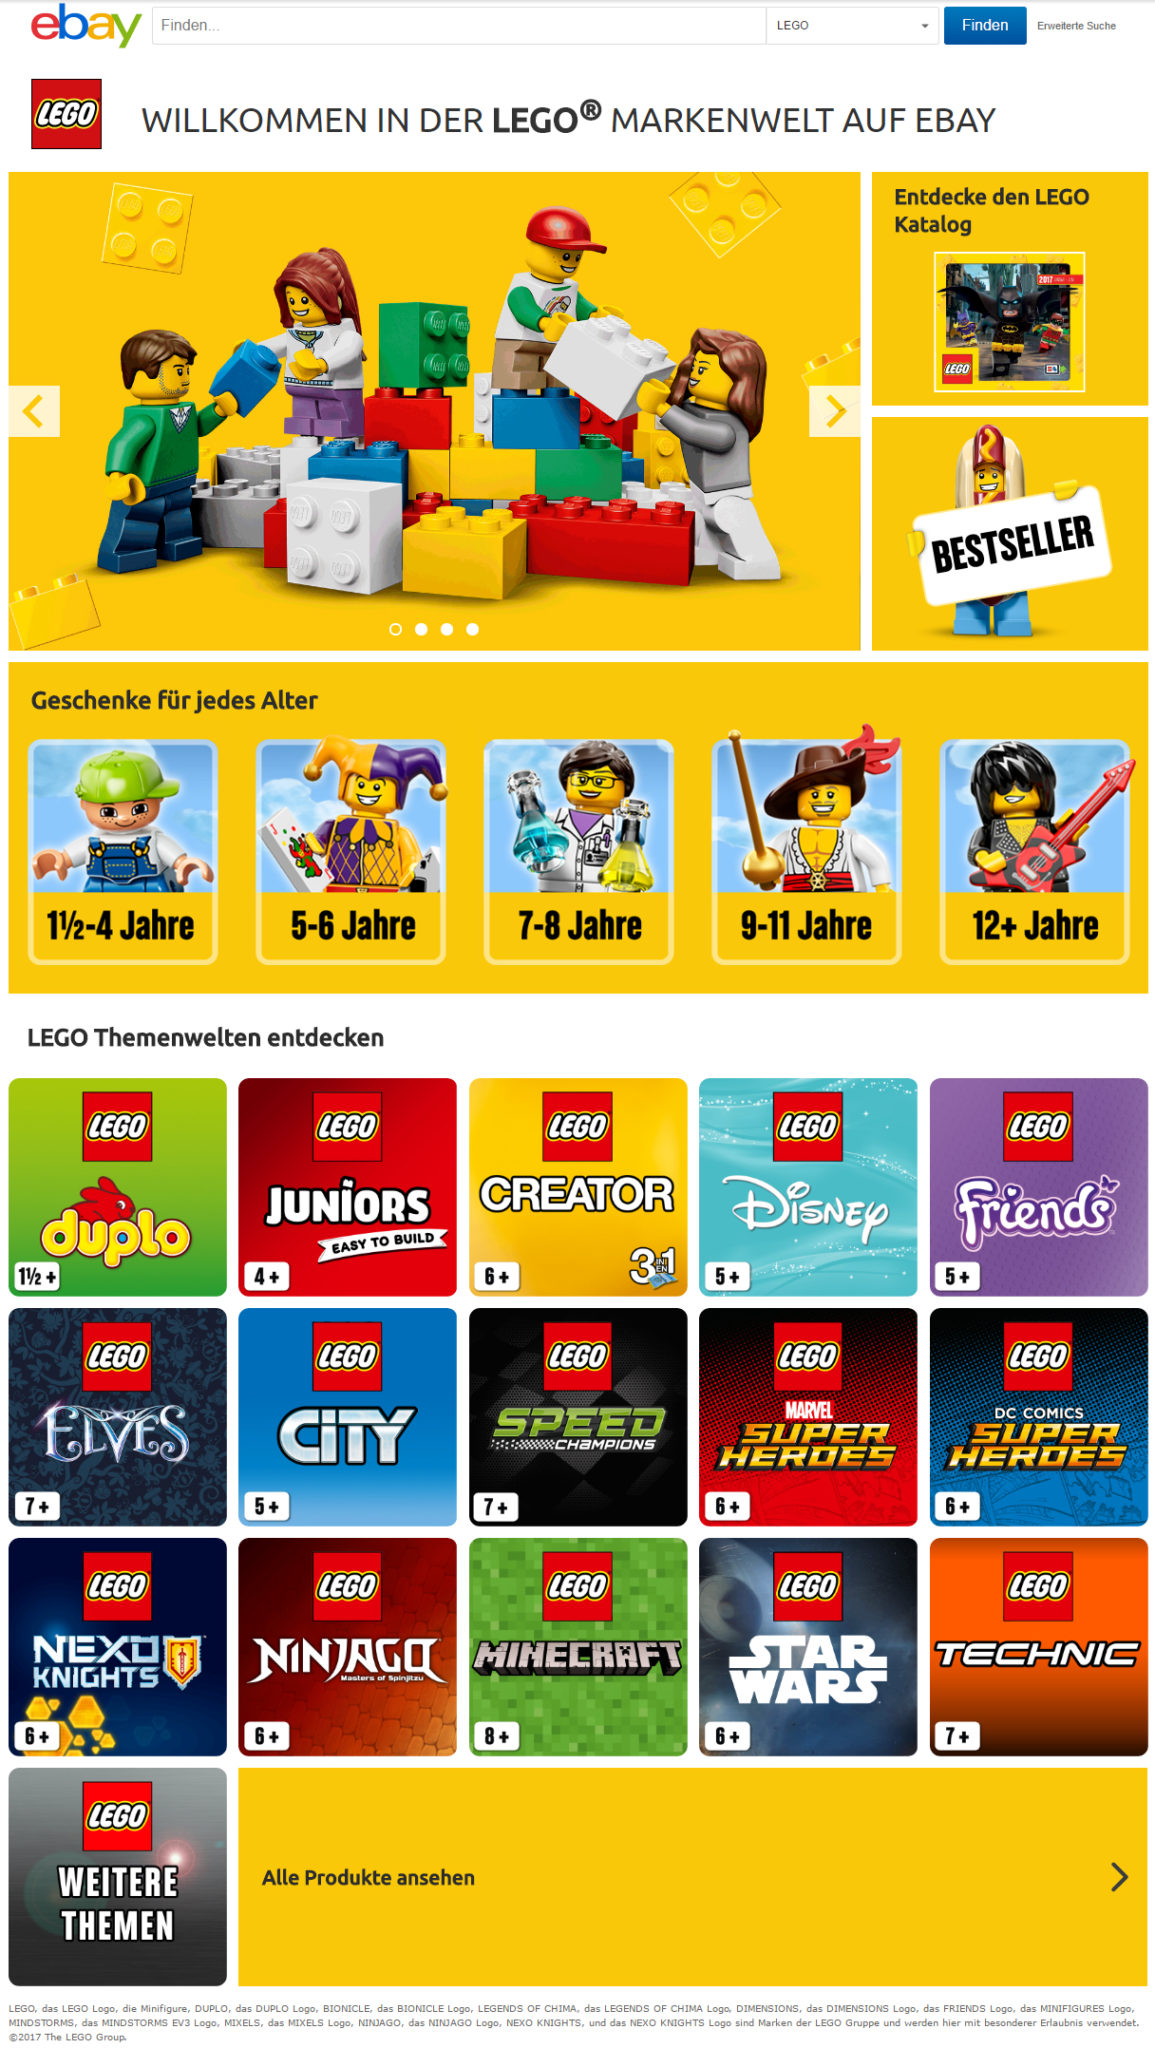 eBay_LEGO_Markenwelt